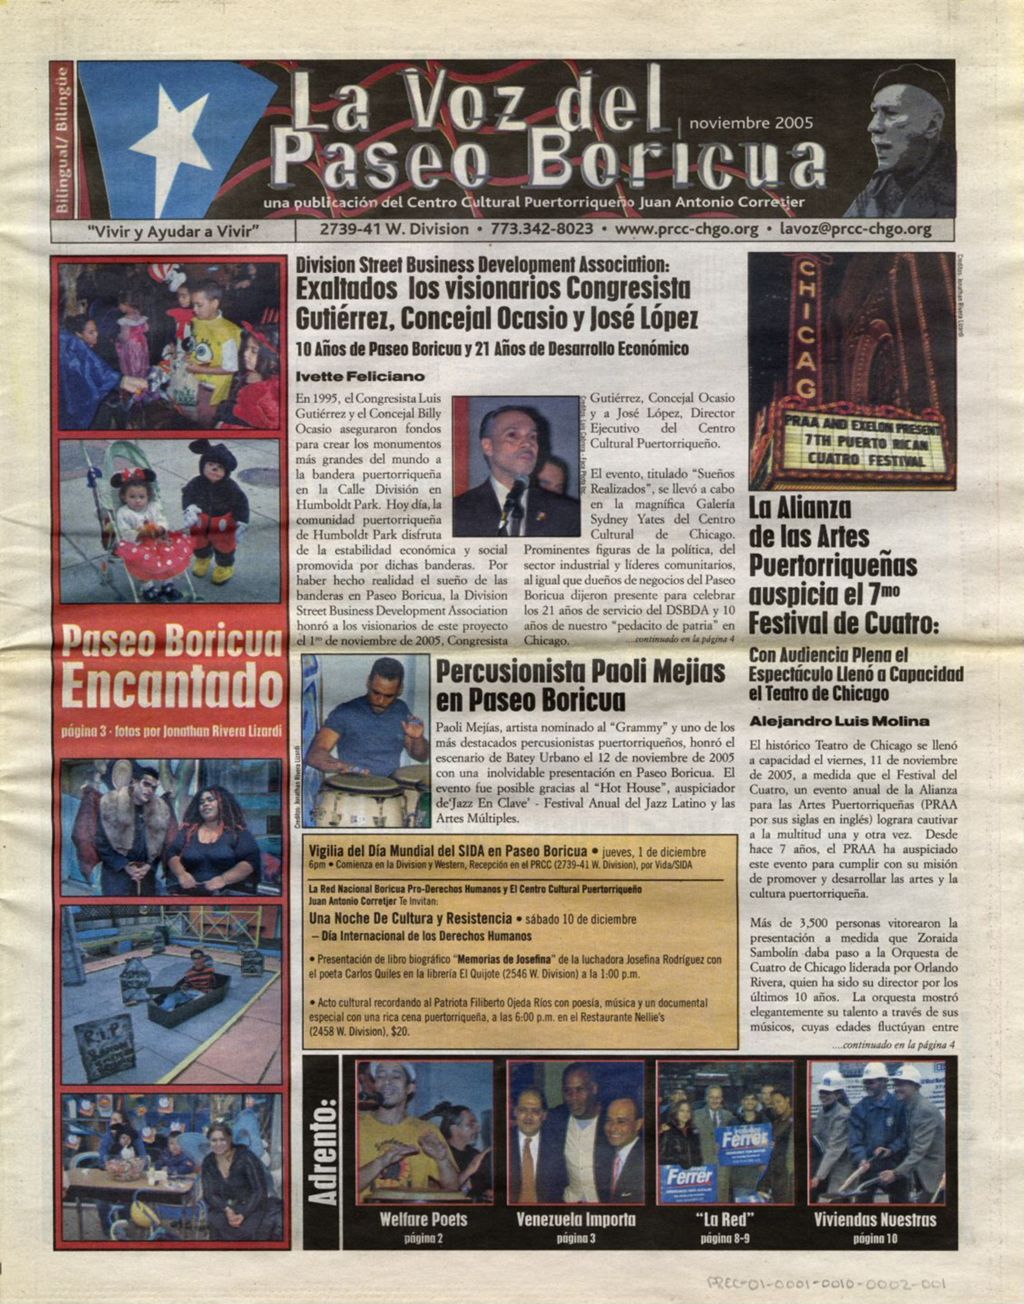 La Voz del Paseo Boricua; November 2005 (Spanish and English covers)